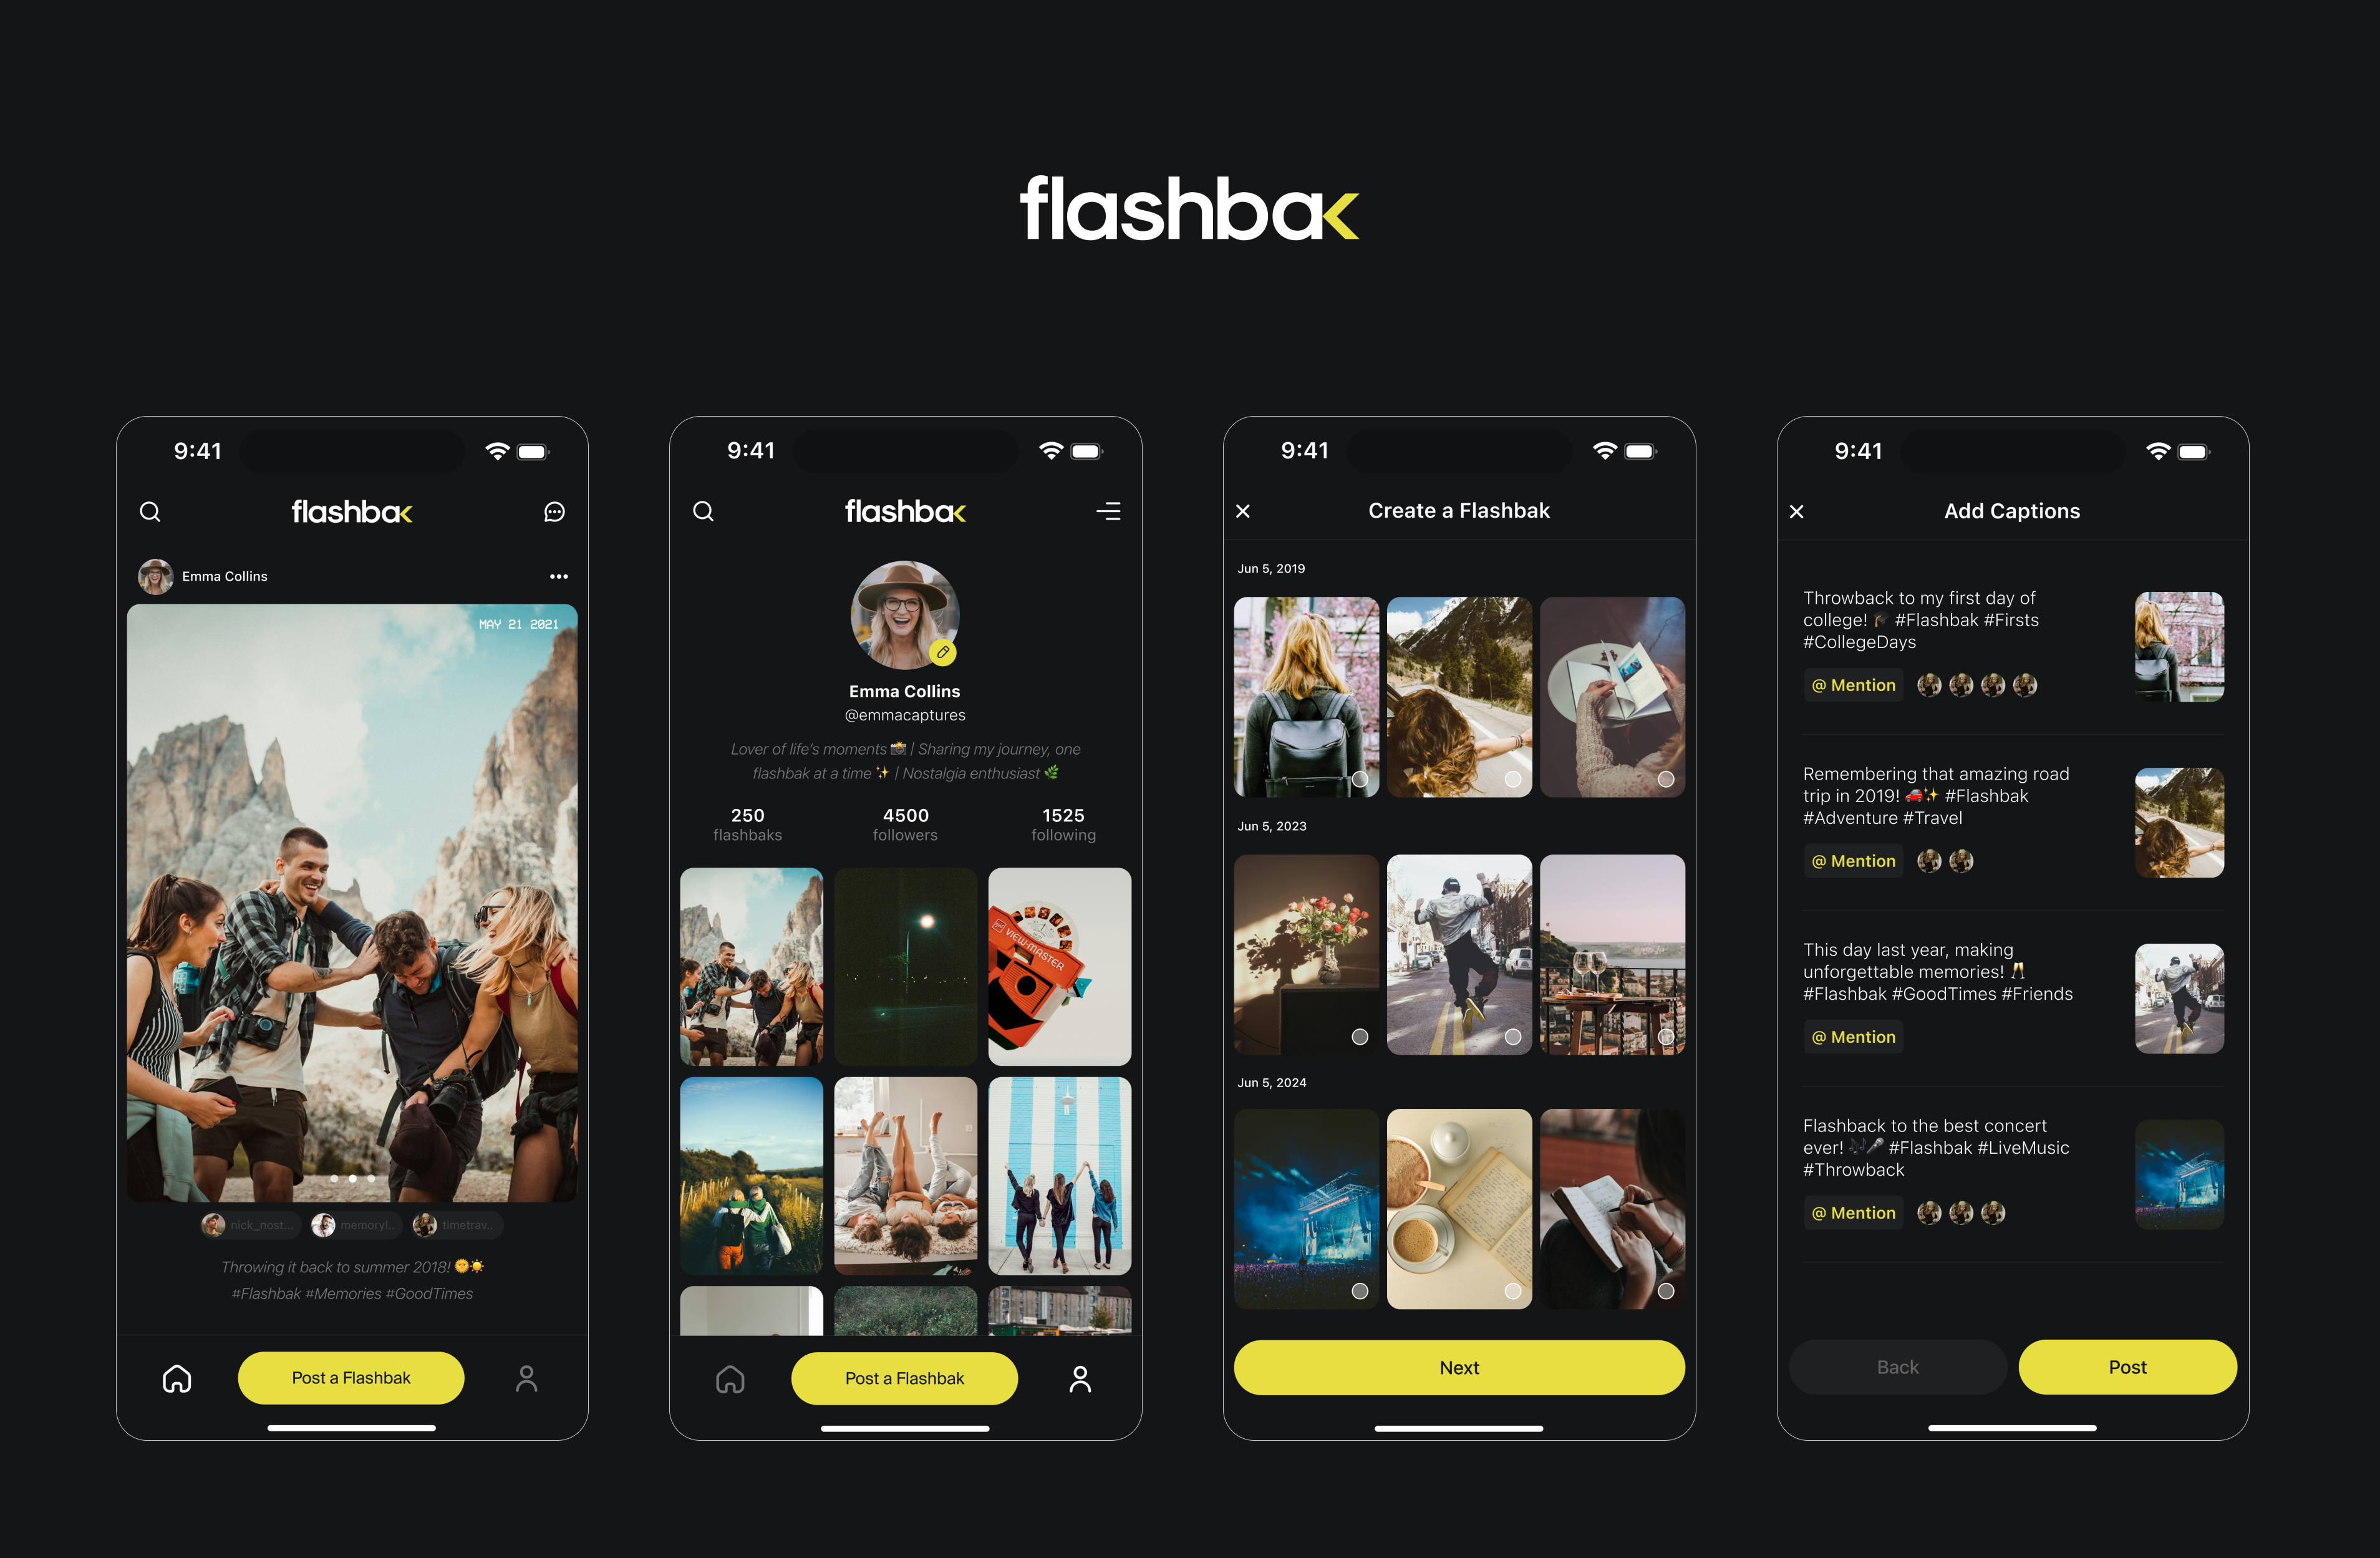 Flashbak: A Nostalgic Digital Platform for Revisiting Past Moments